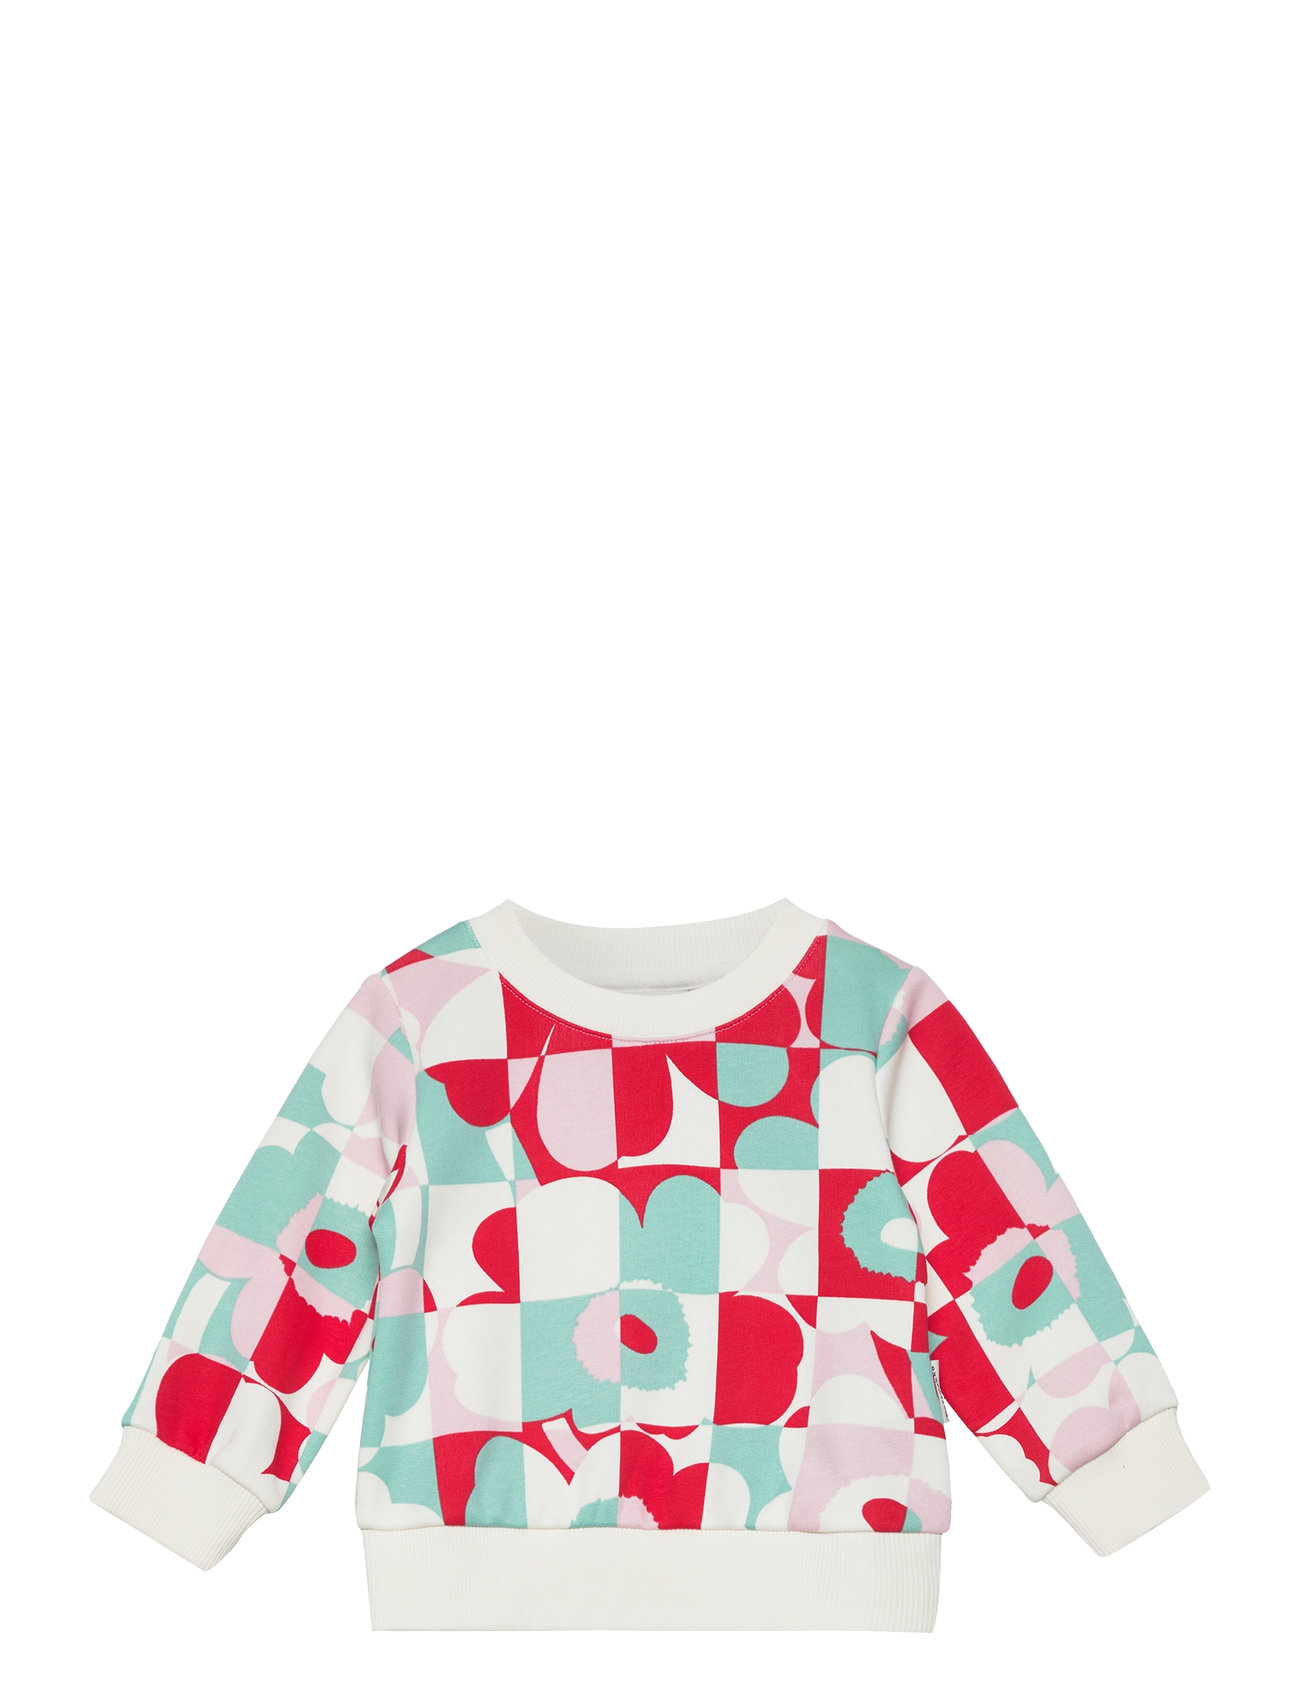 Kuulas Ruutu Unikko I Tops Sweat-shirts & Hoodies Sweat-shirts Multi/patterned Marimekko